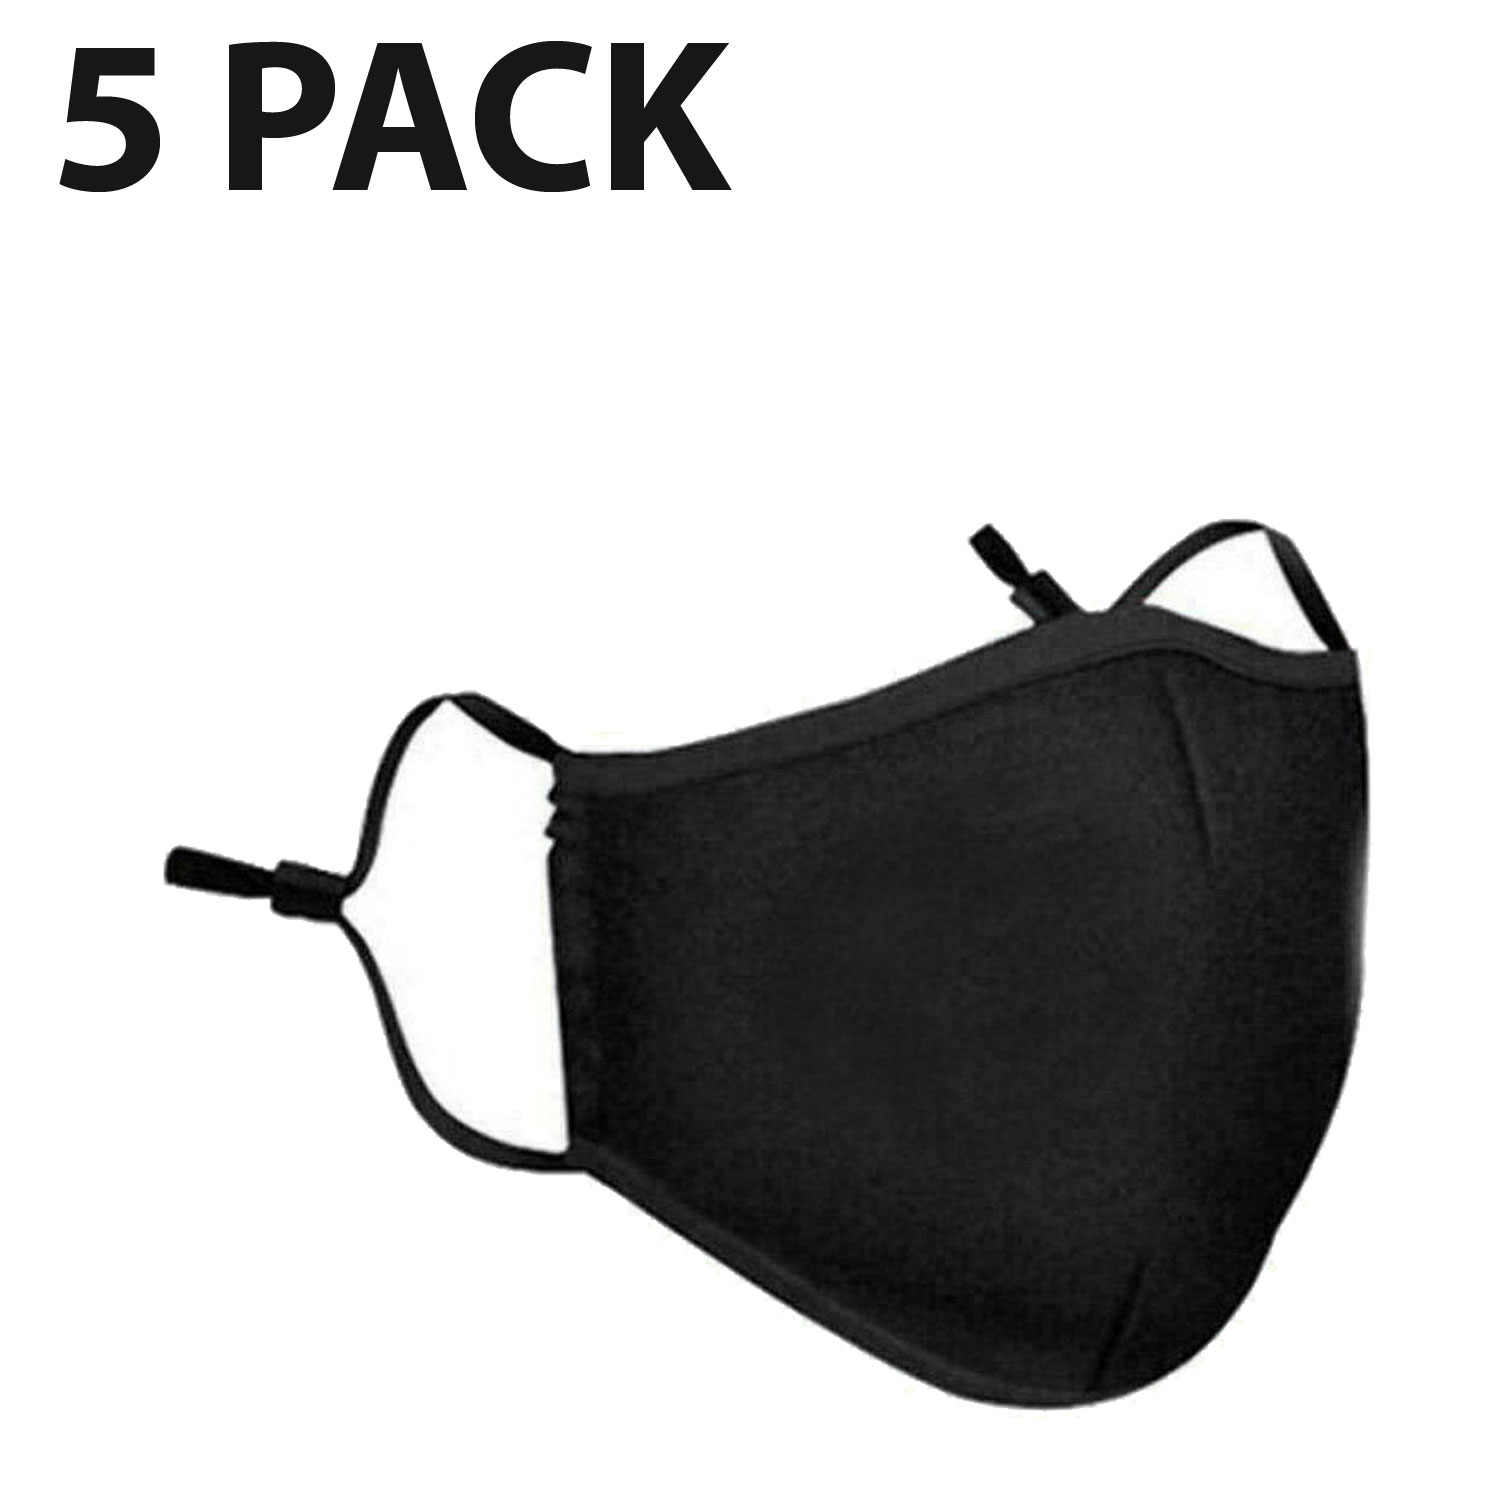 thumbnail 6 - 5 PCS Washable Face Mask Black Reusable Breathable Unisex Double Layer Cotton